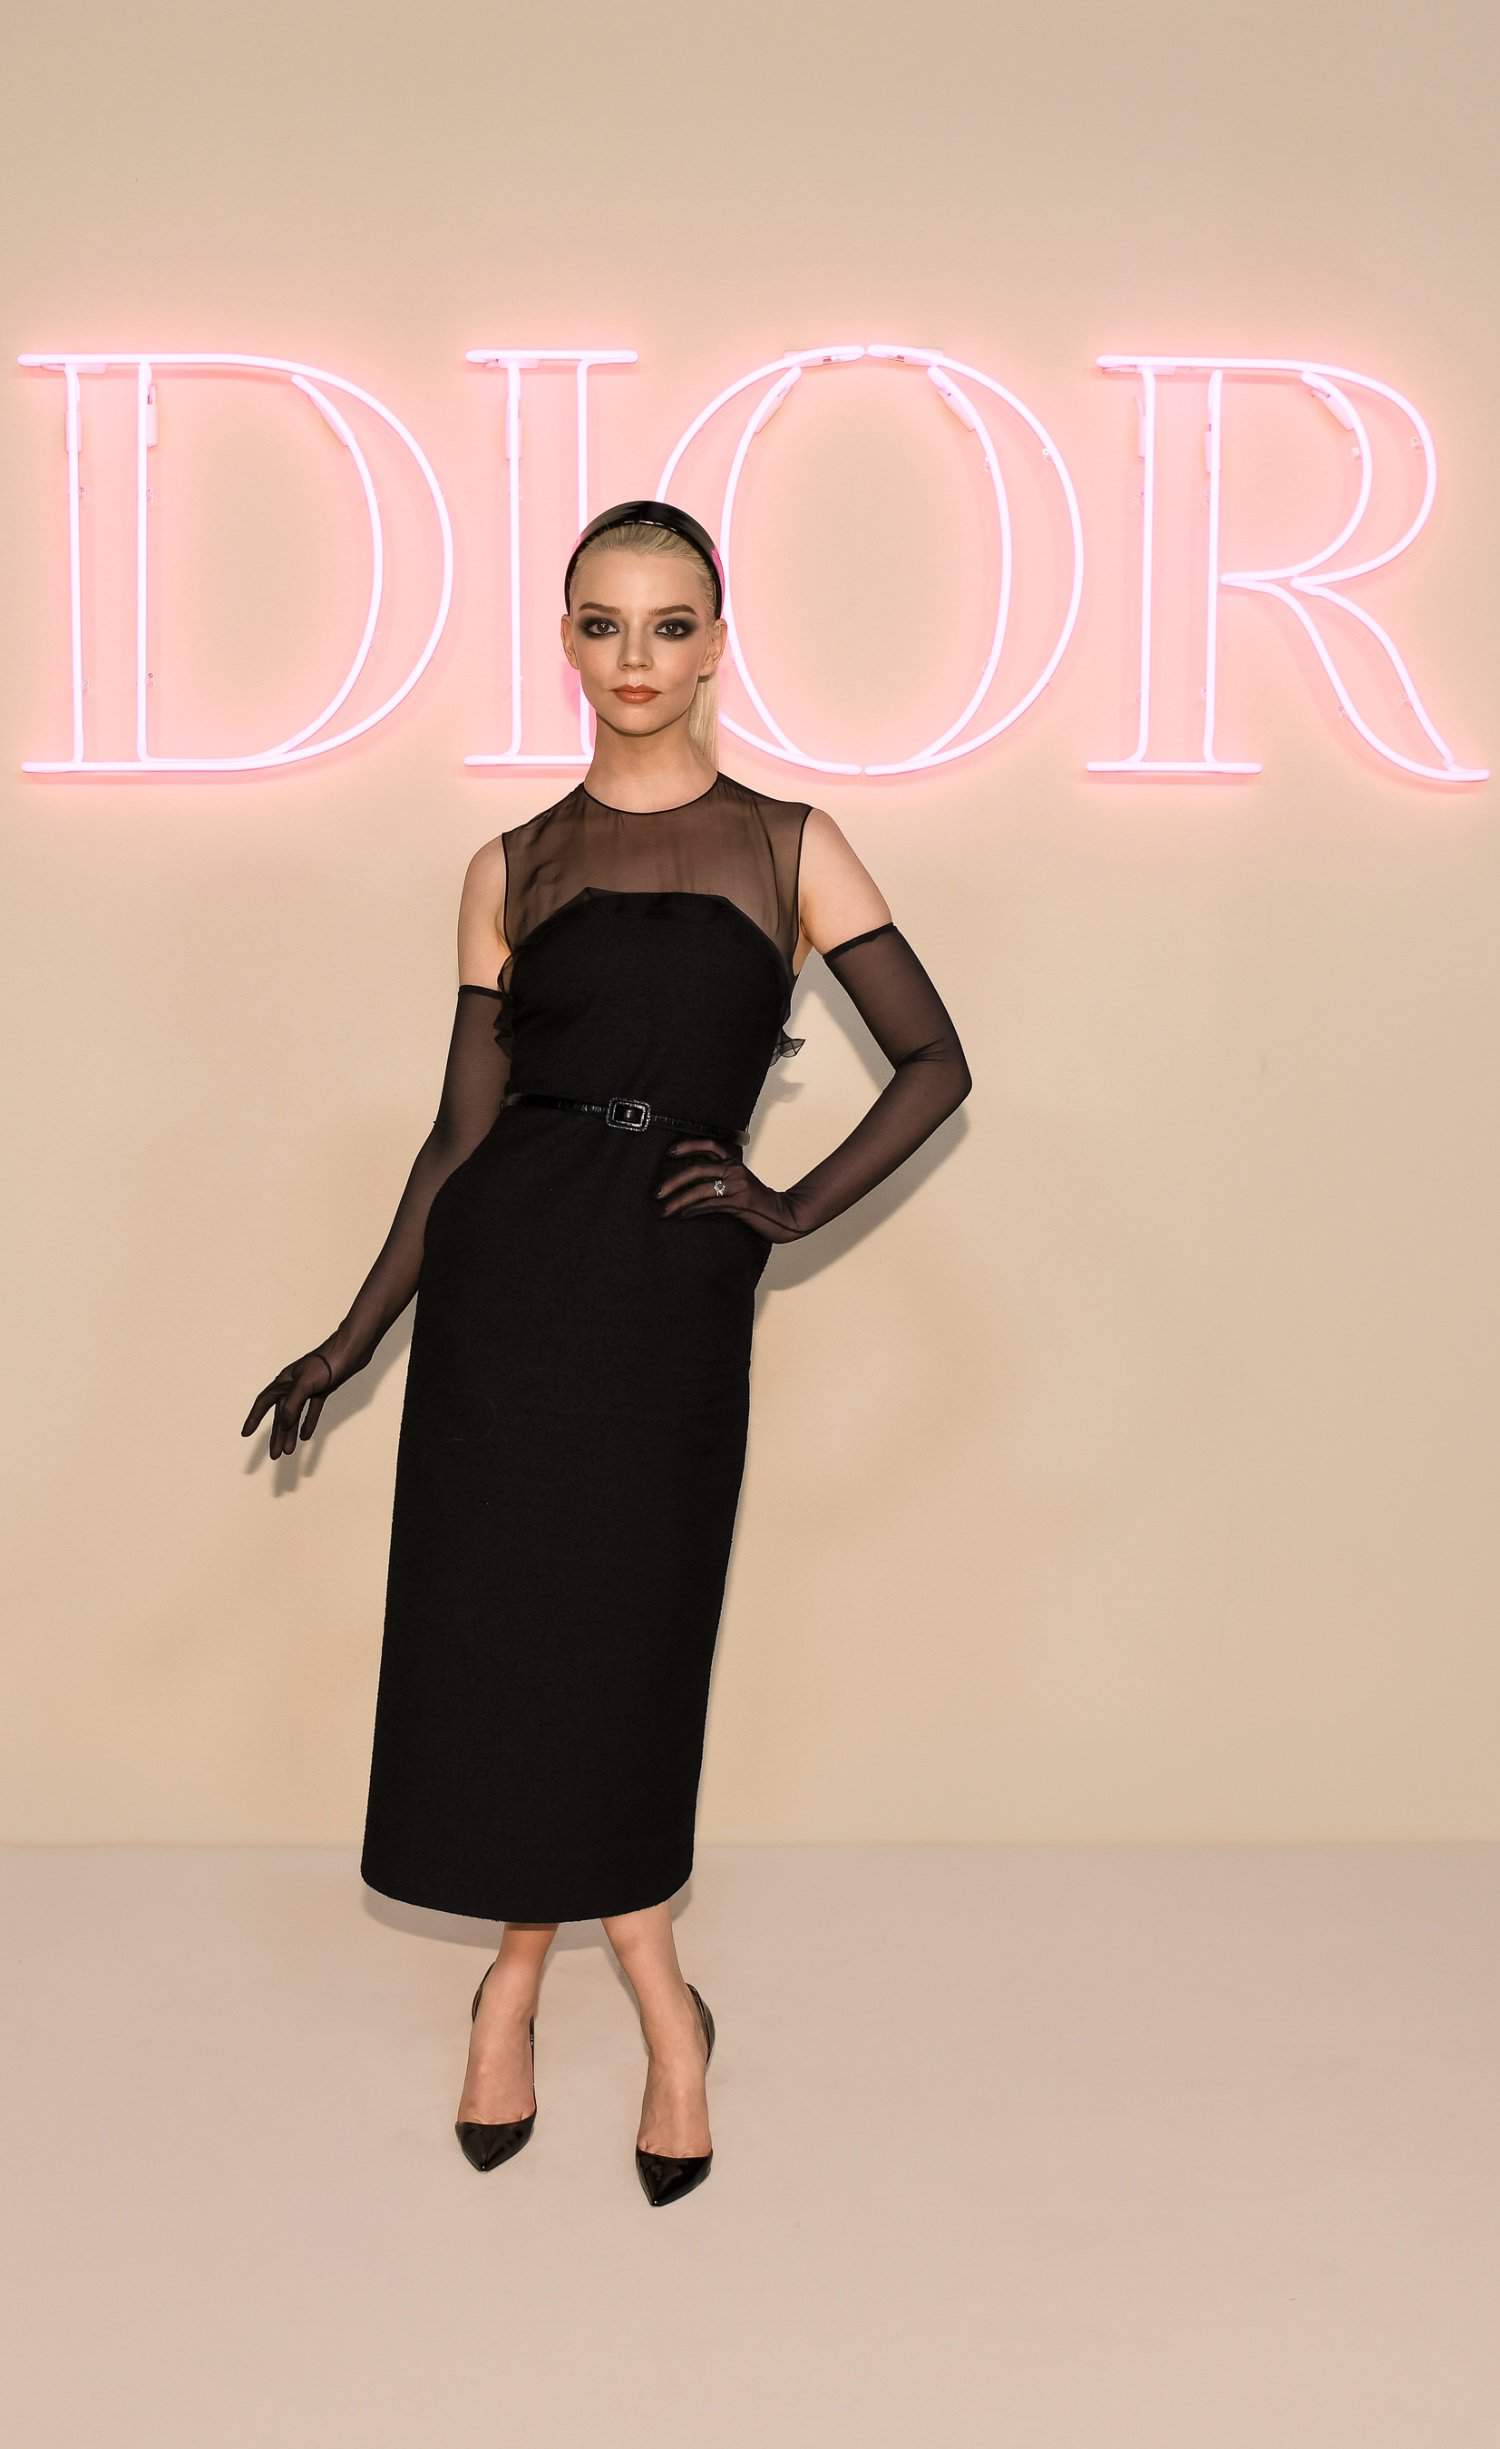 Dior, fashion show, New York City, Anya Taylor-Joy